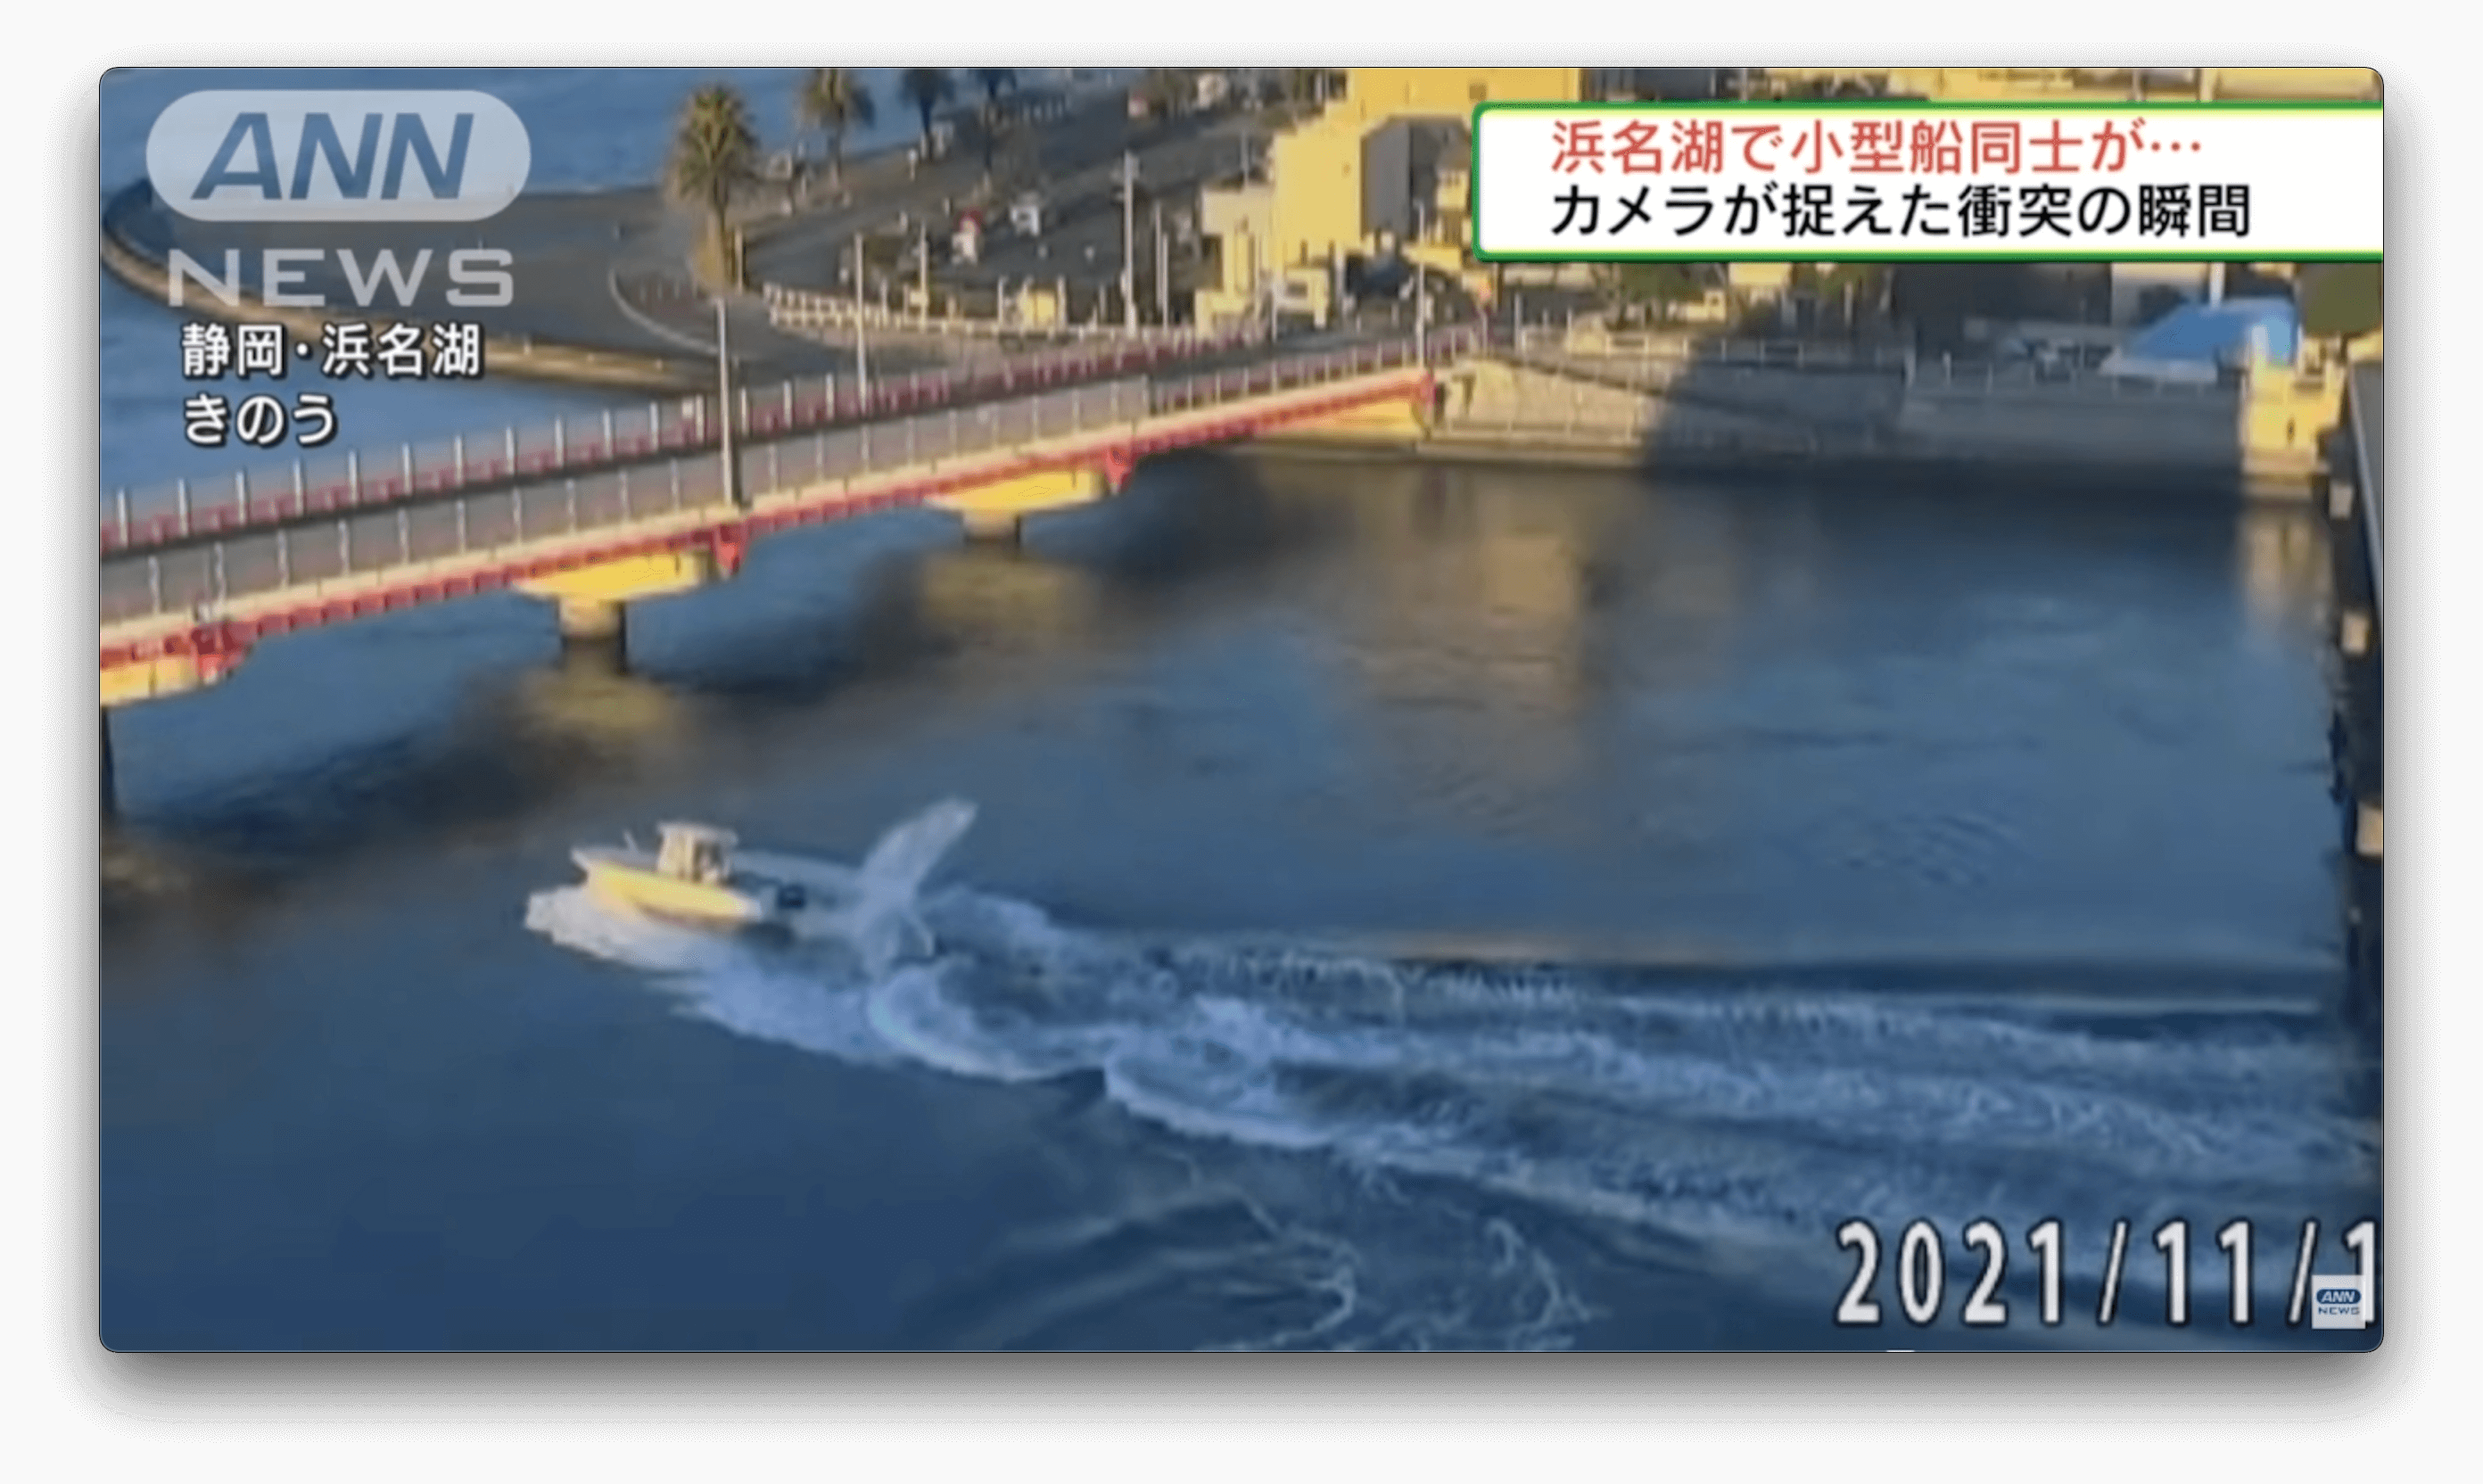 Barcos colidem em lago no Japão, ferindo gravemente 3 pessoas